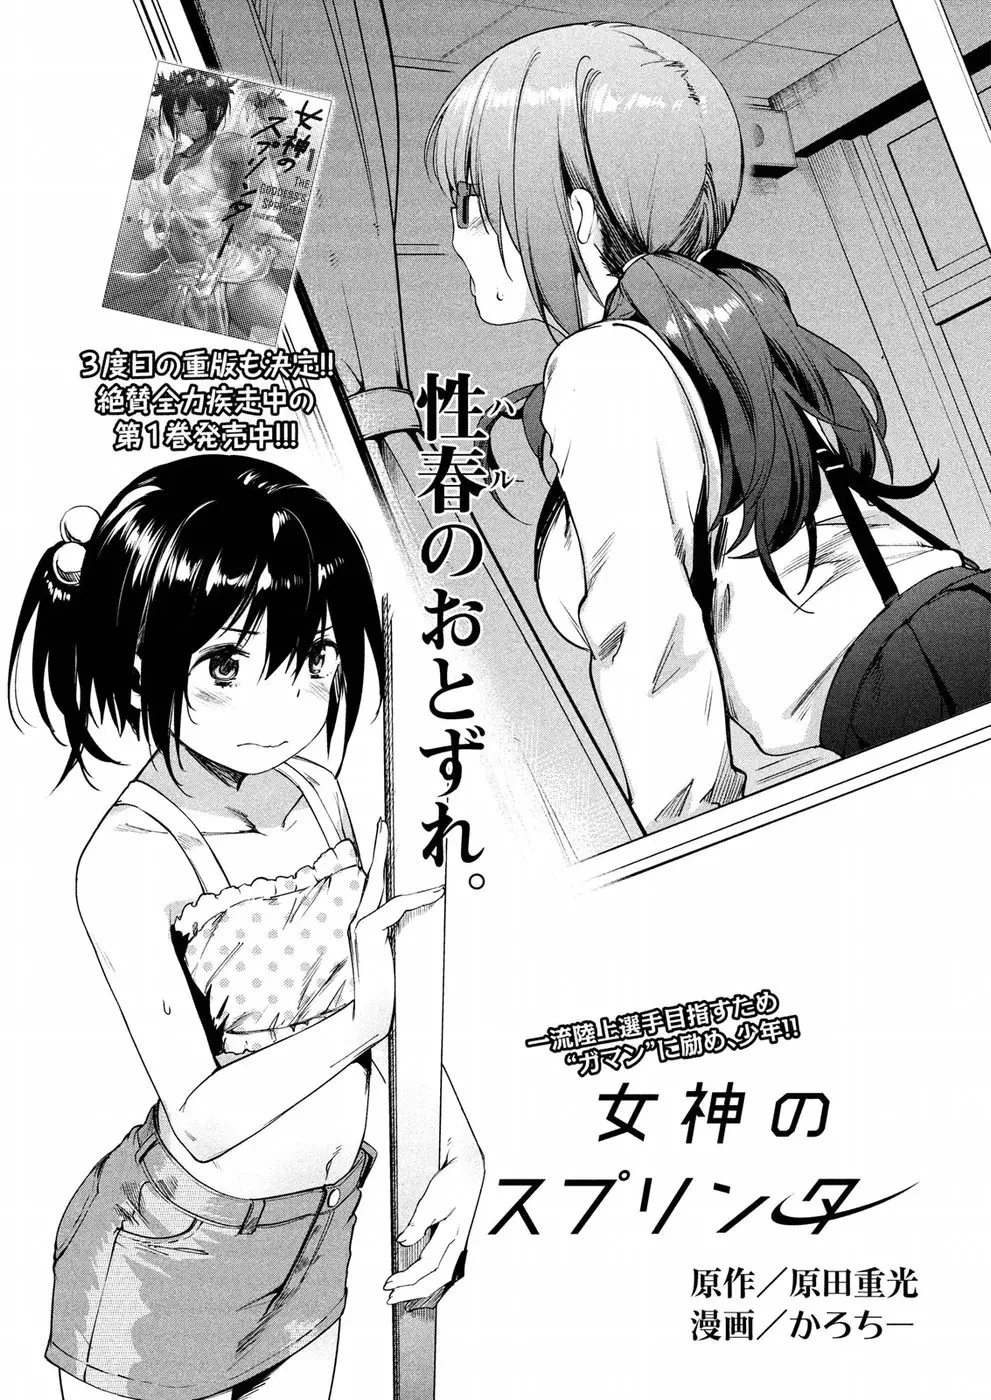 Megami No Sprinter - 10 page 2